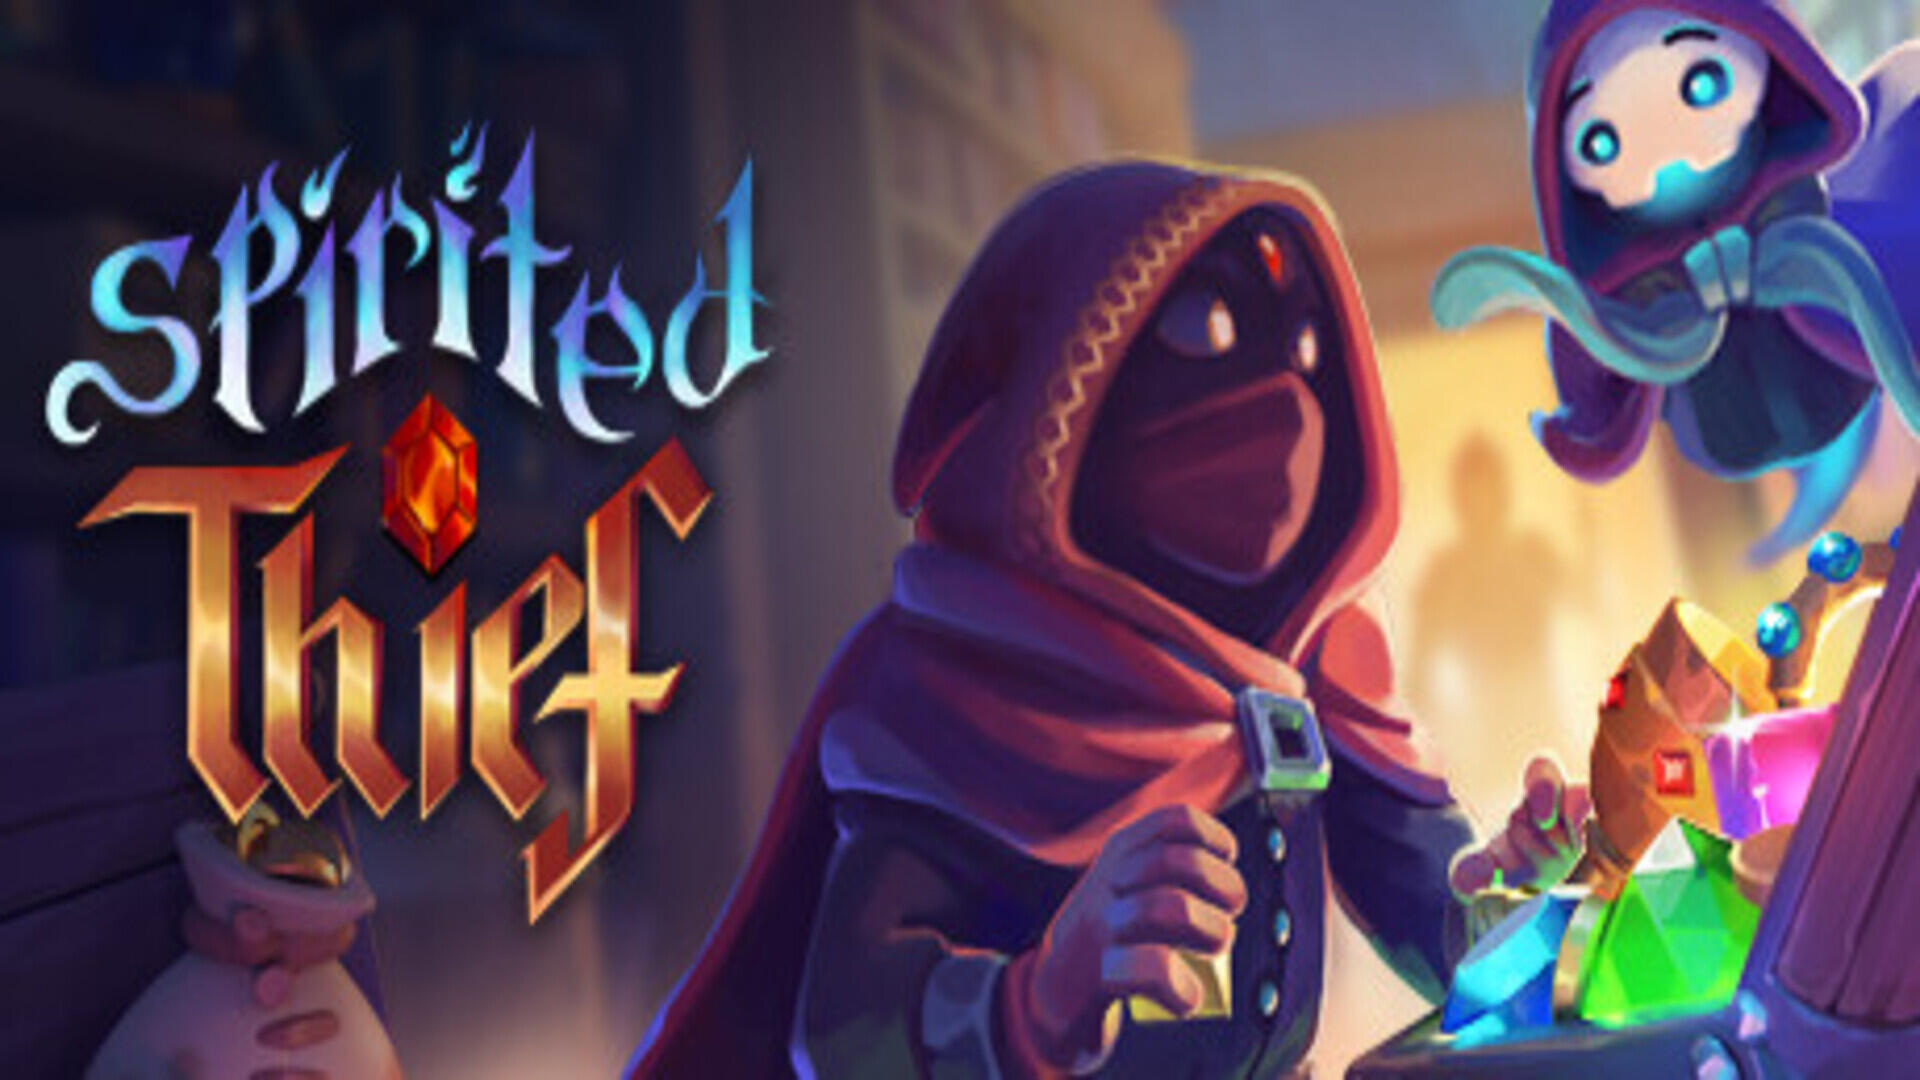 Spirited Thief – Free Download (Build 12224275)